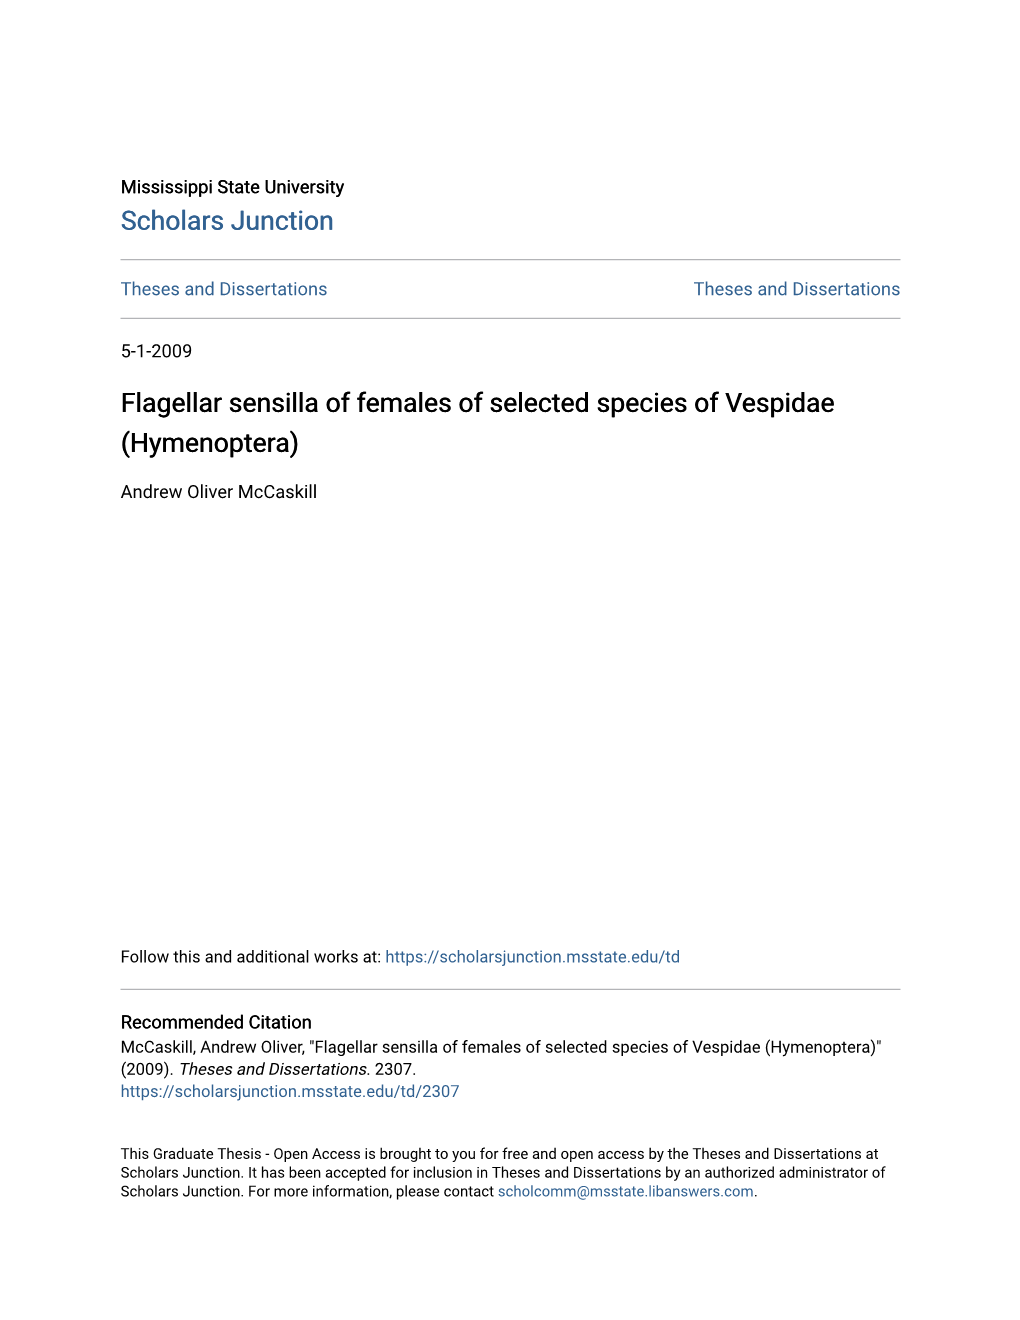 Flagellar Sensilla of Females of Selected Species of Vespidae (Hymenoptera)